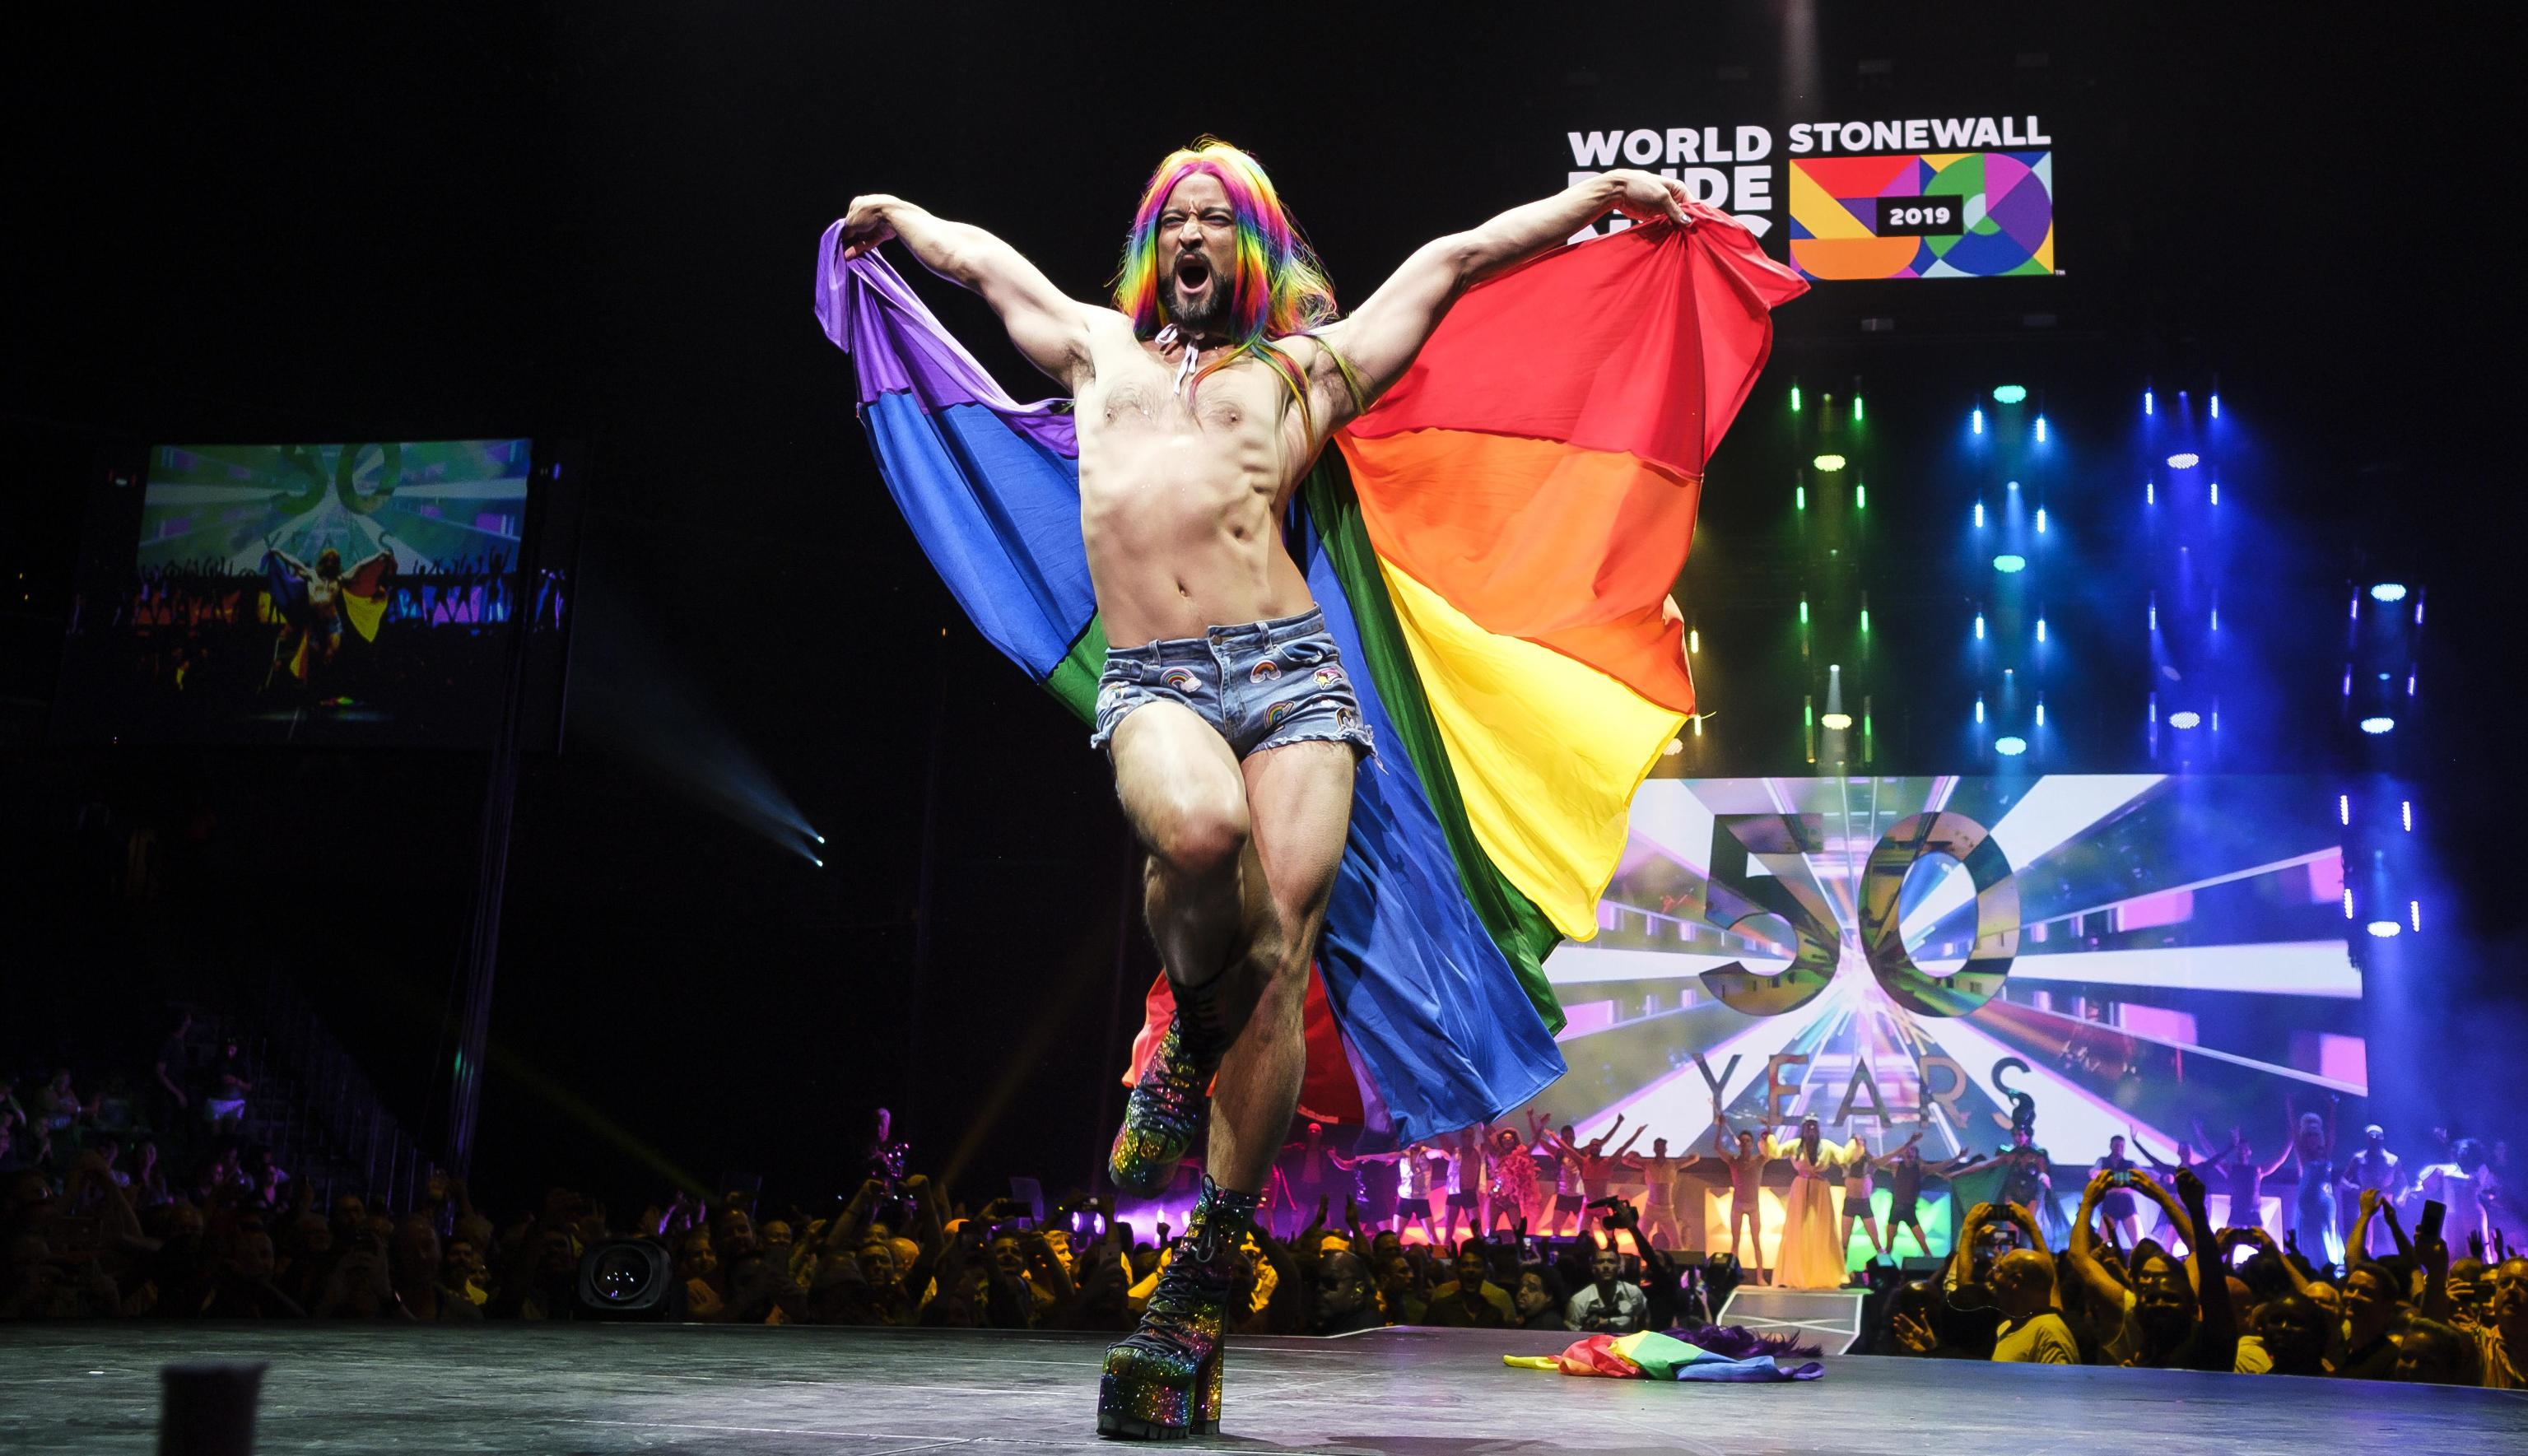 Una performance che si è svolta durante la cerimonia di apertura del WorldPride 2019 (Foto di Epa/Justin Lane)